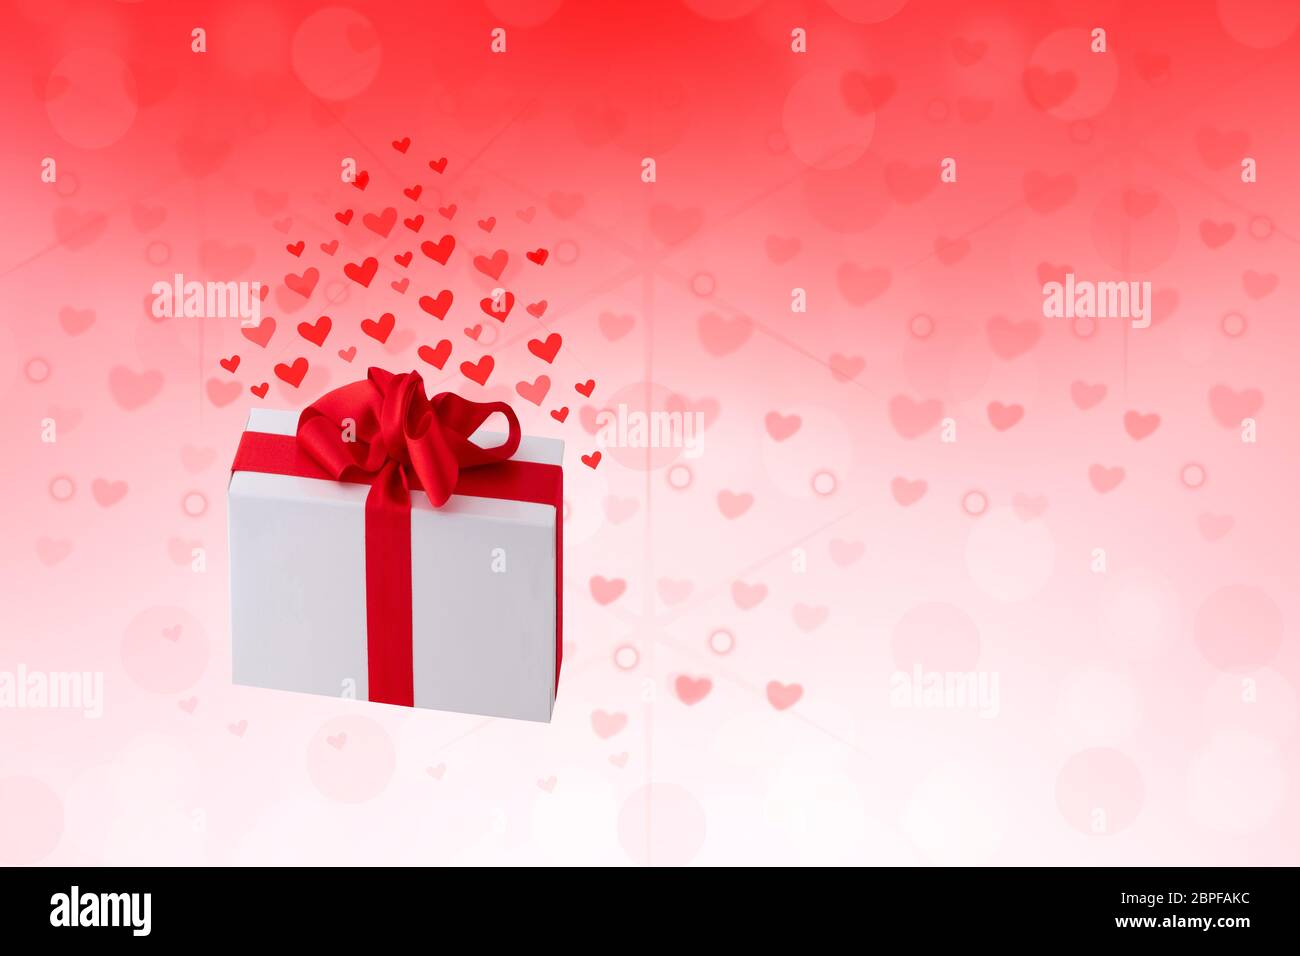 Buon San Valentino o giorno di nozze. Astratto amore romantico vacanza sfondo rosso con cuori e una scatola regalo con nastro rosso. Template con spazio per voi Foto Stock